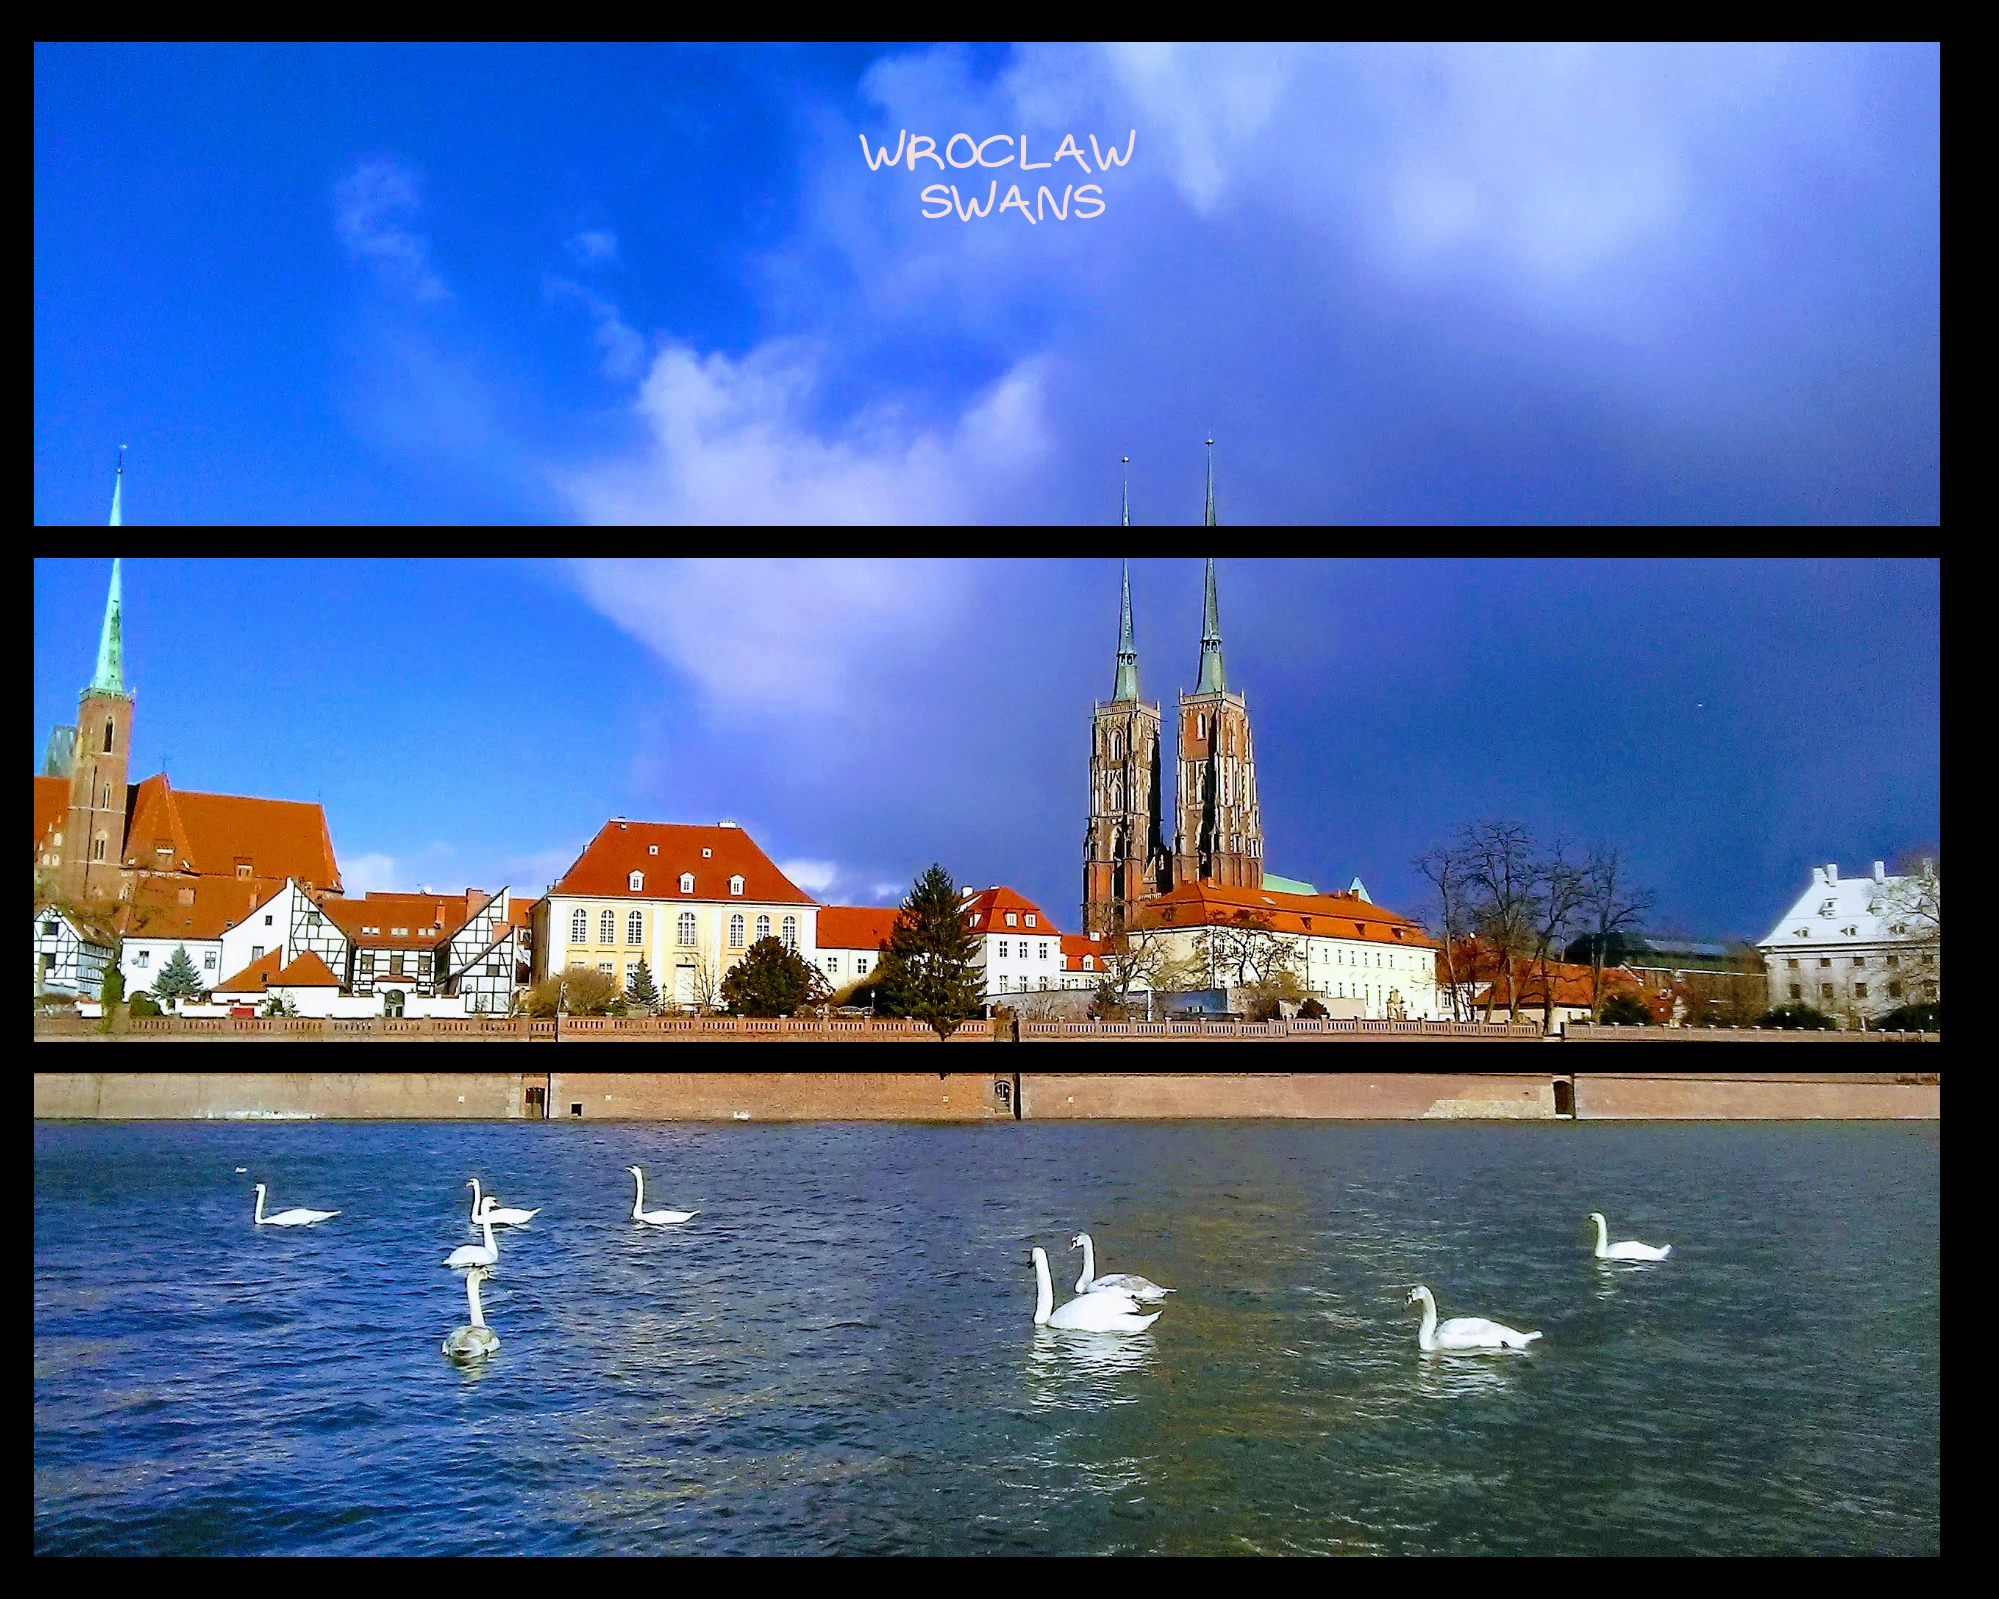 Wroclaw Swans